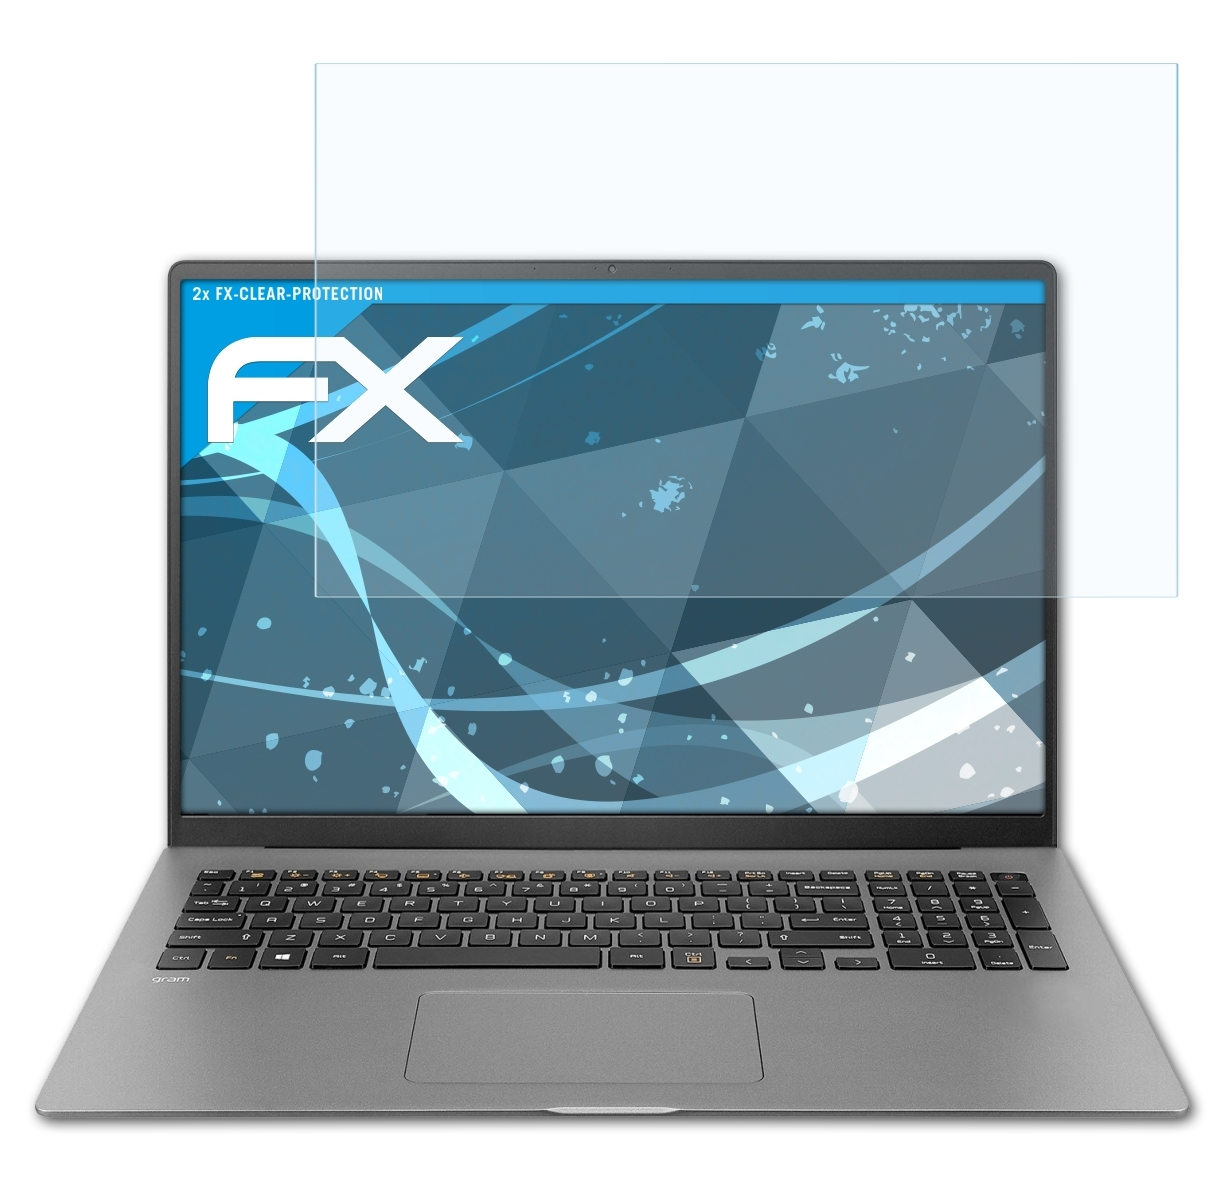 Gram (17Z90N)) FX-Clear 2x ATFOLIX 17 LG Displayschutz(für